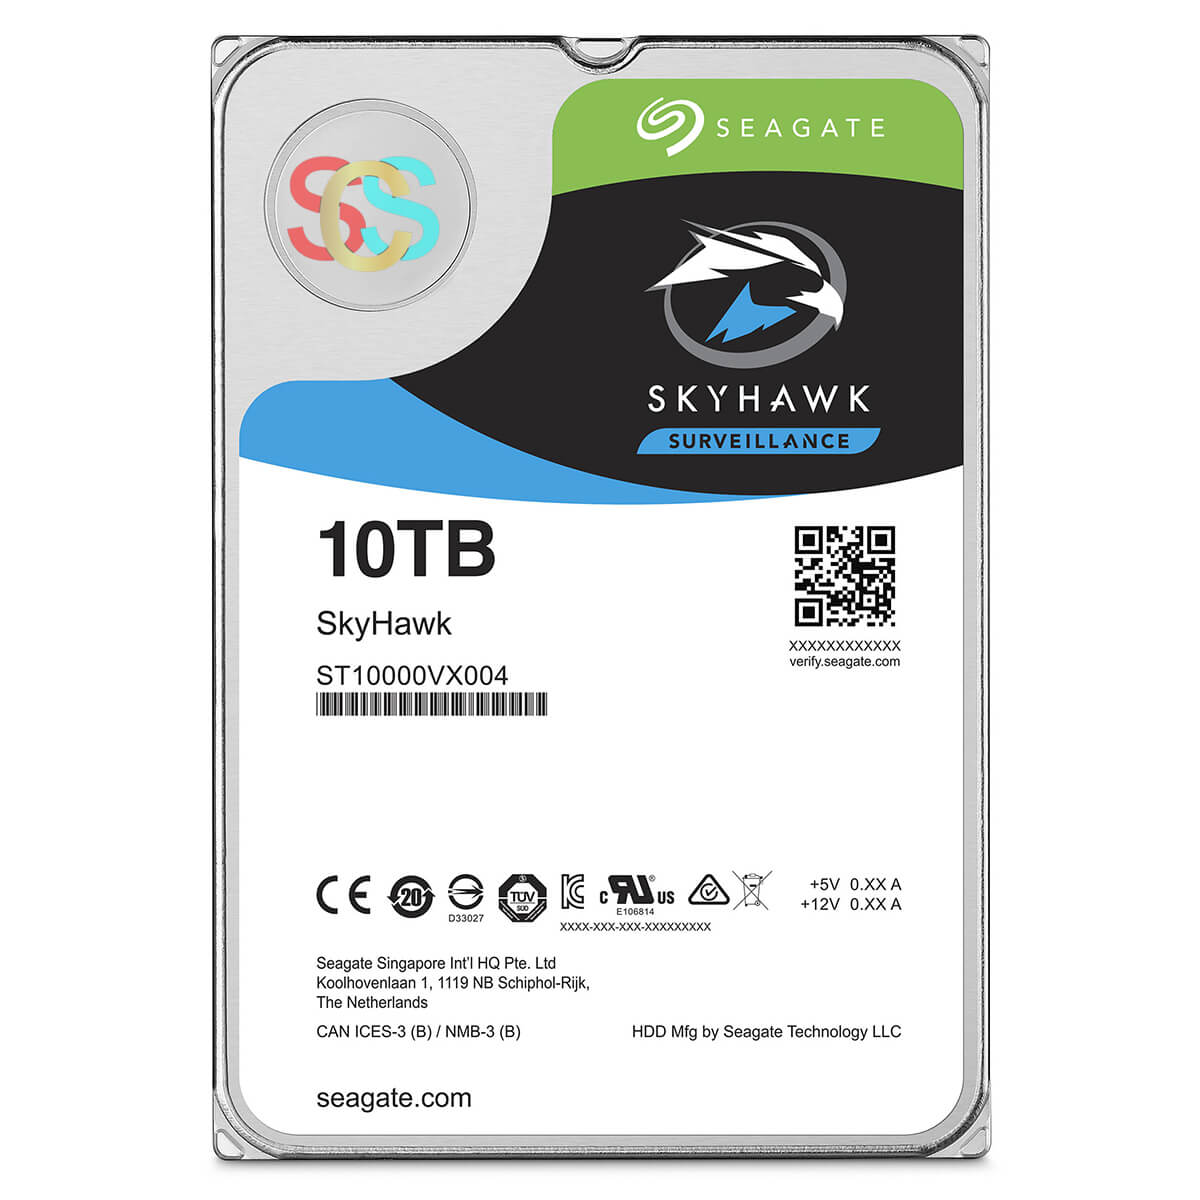 Seagate SkyHawk 10TB 3.5 Inch SATA 5400RPM Surveillance HDD